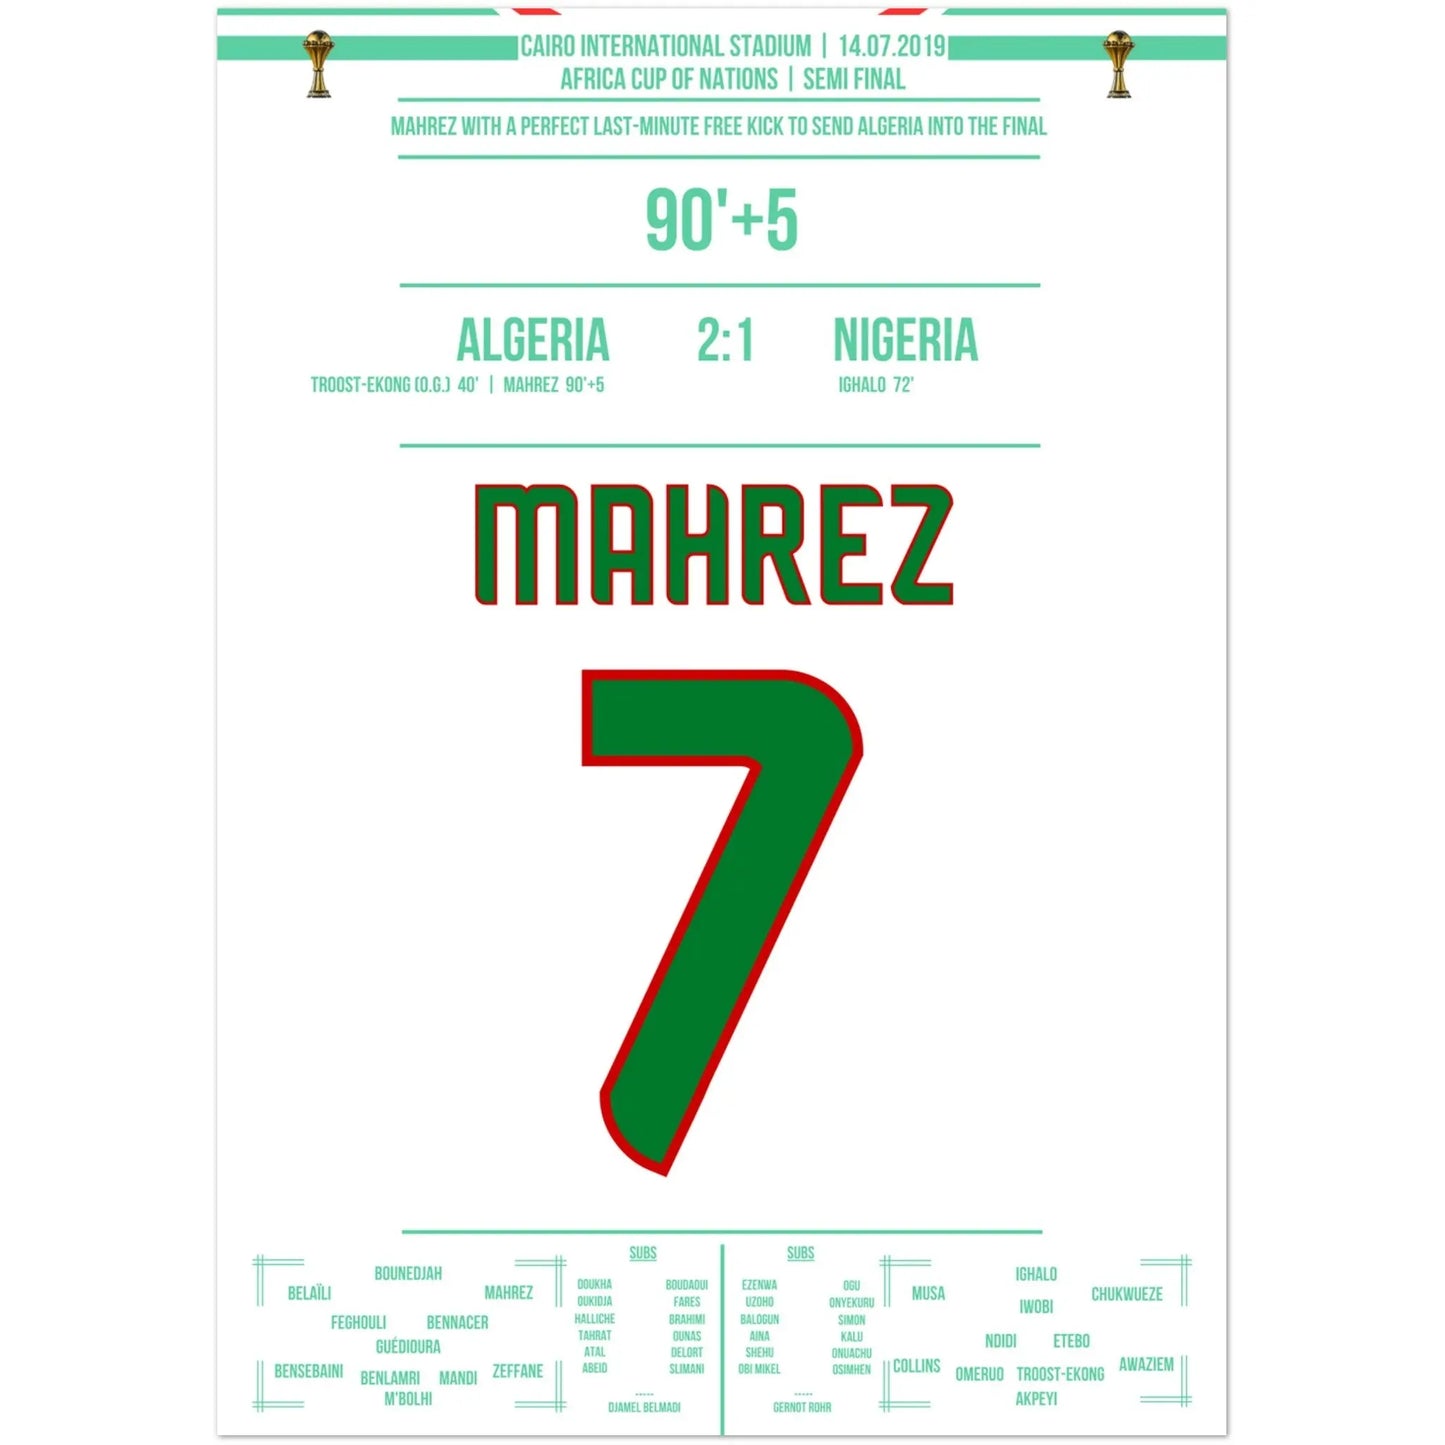 Mahrez' droomvrije trap in de laatste minuut van de halve finale van de Africa Cup of Nations